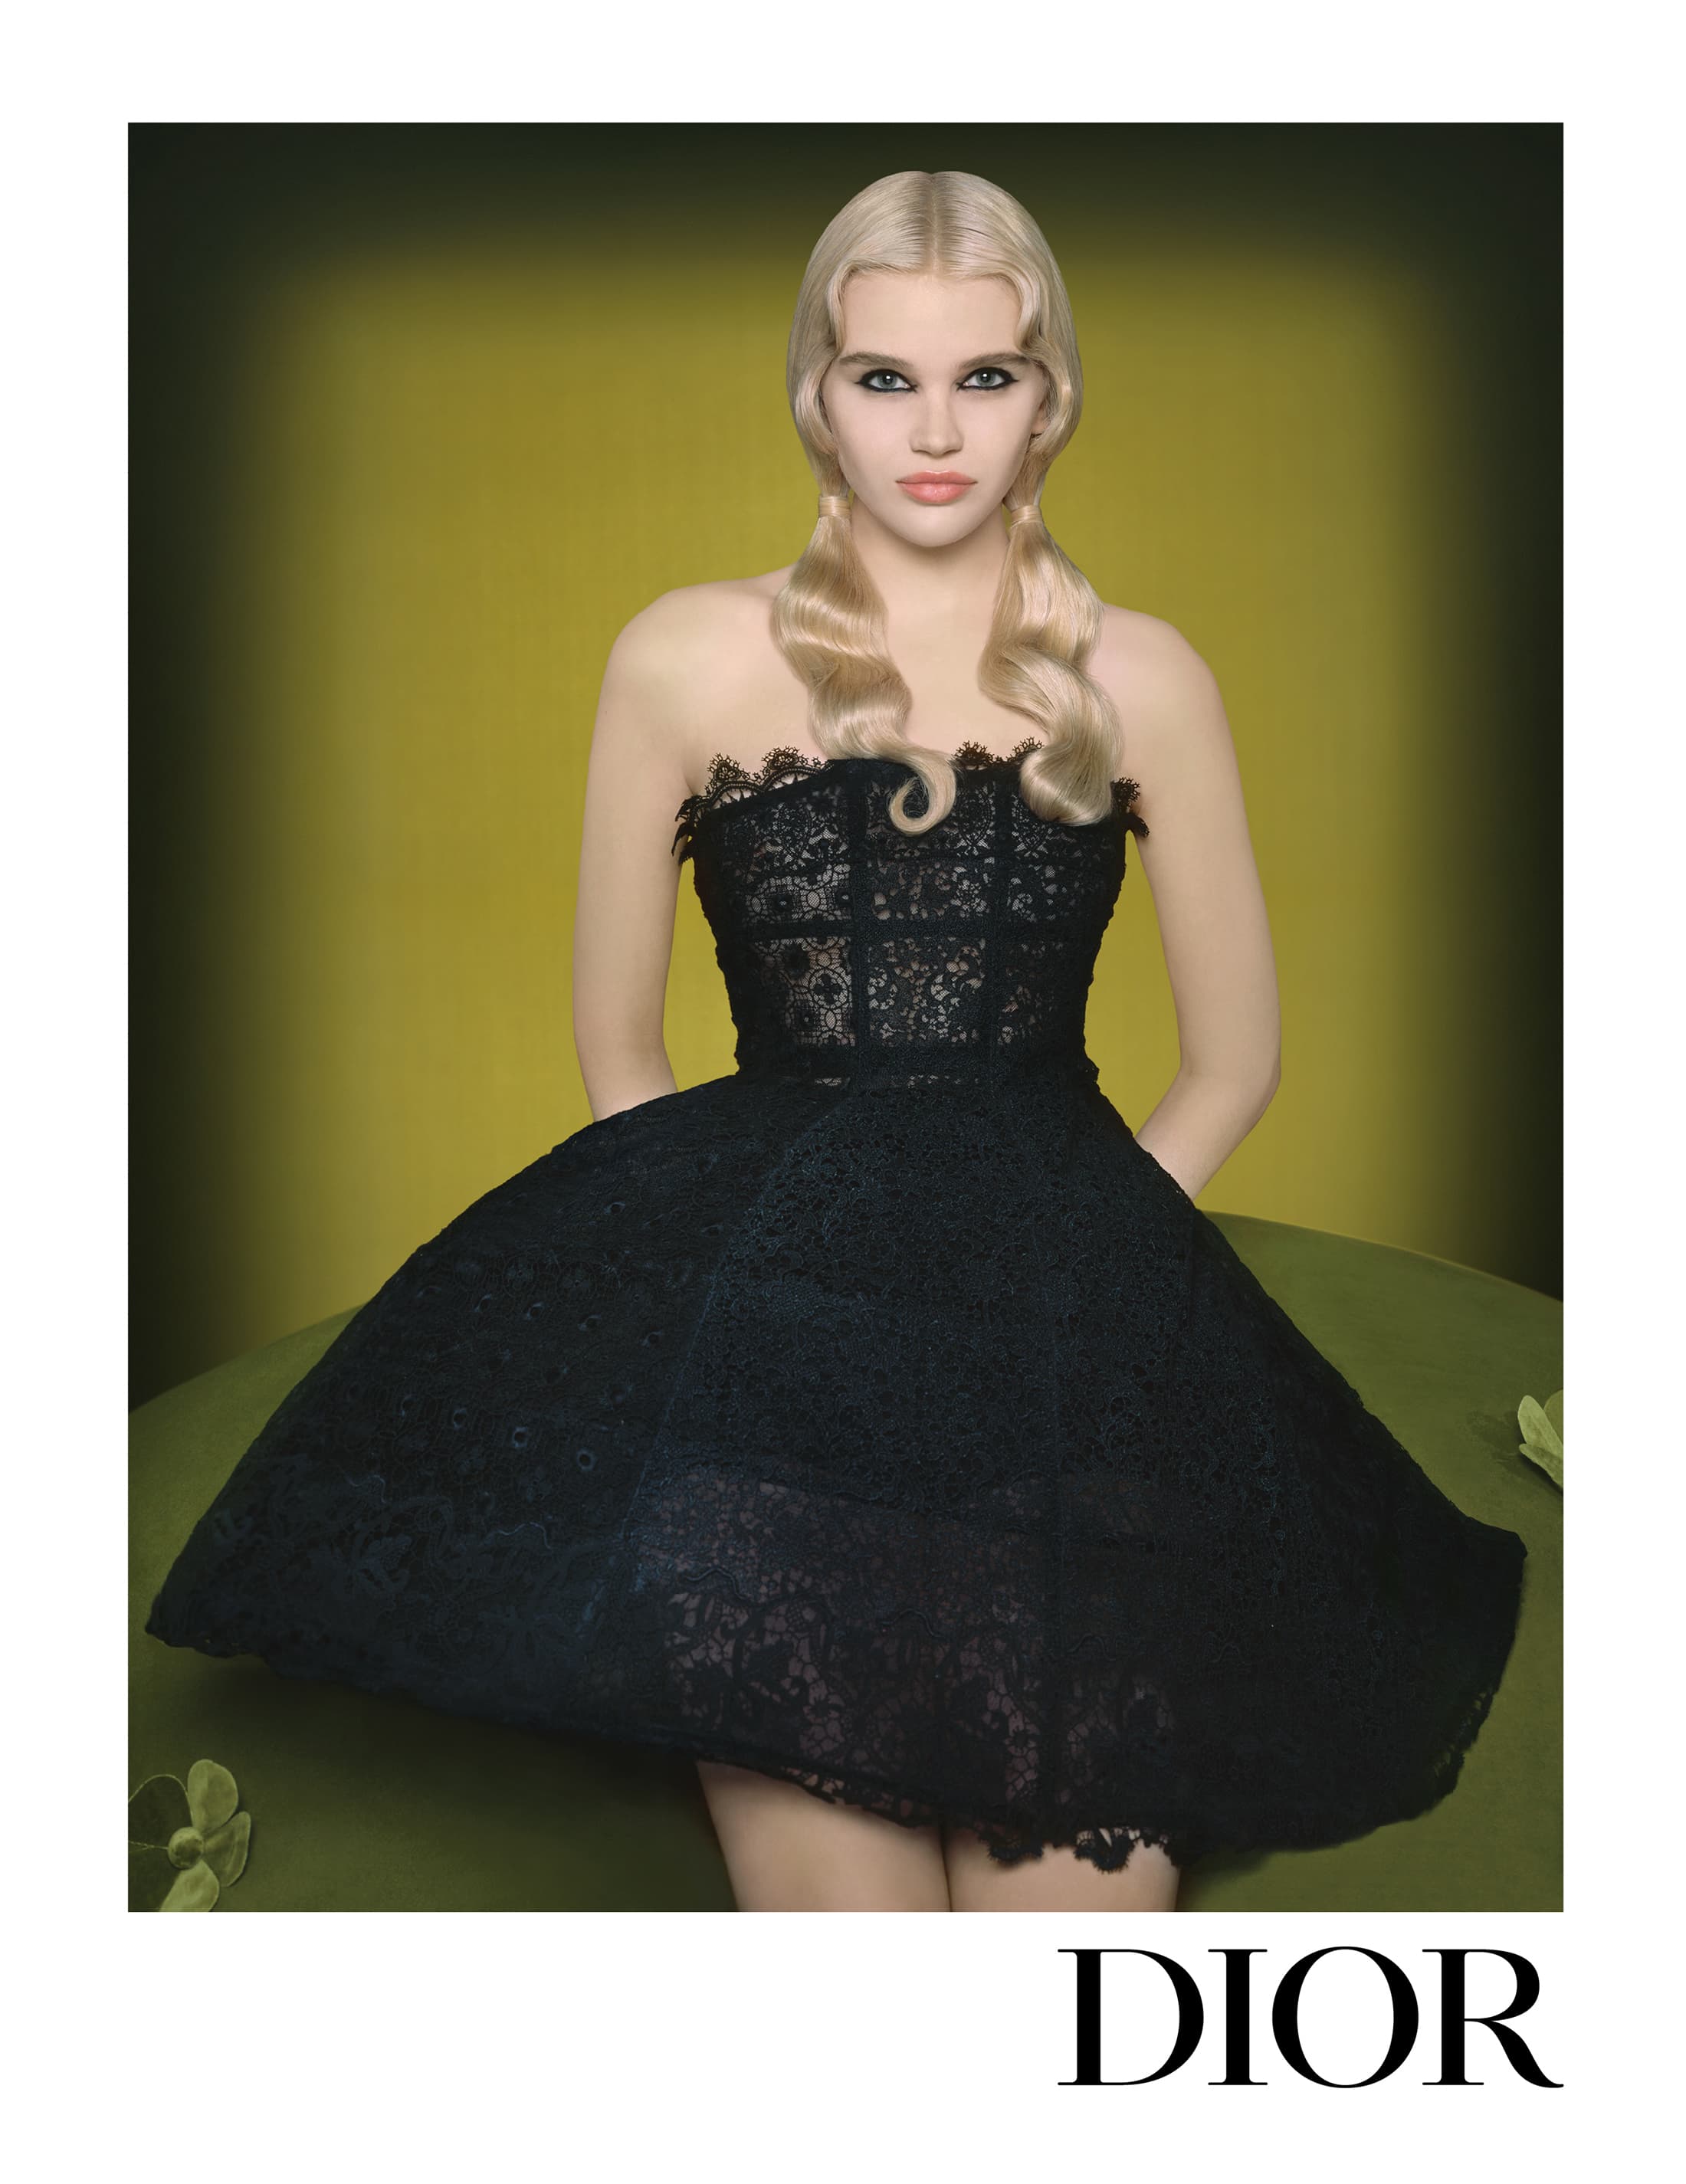 Dior Spring 2023 ad campaign photo